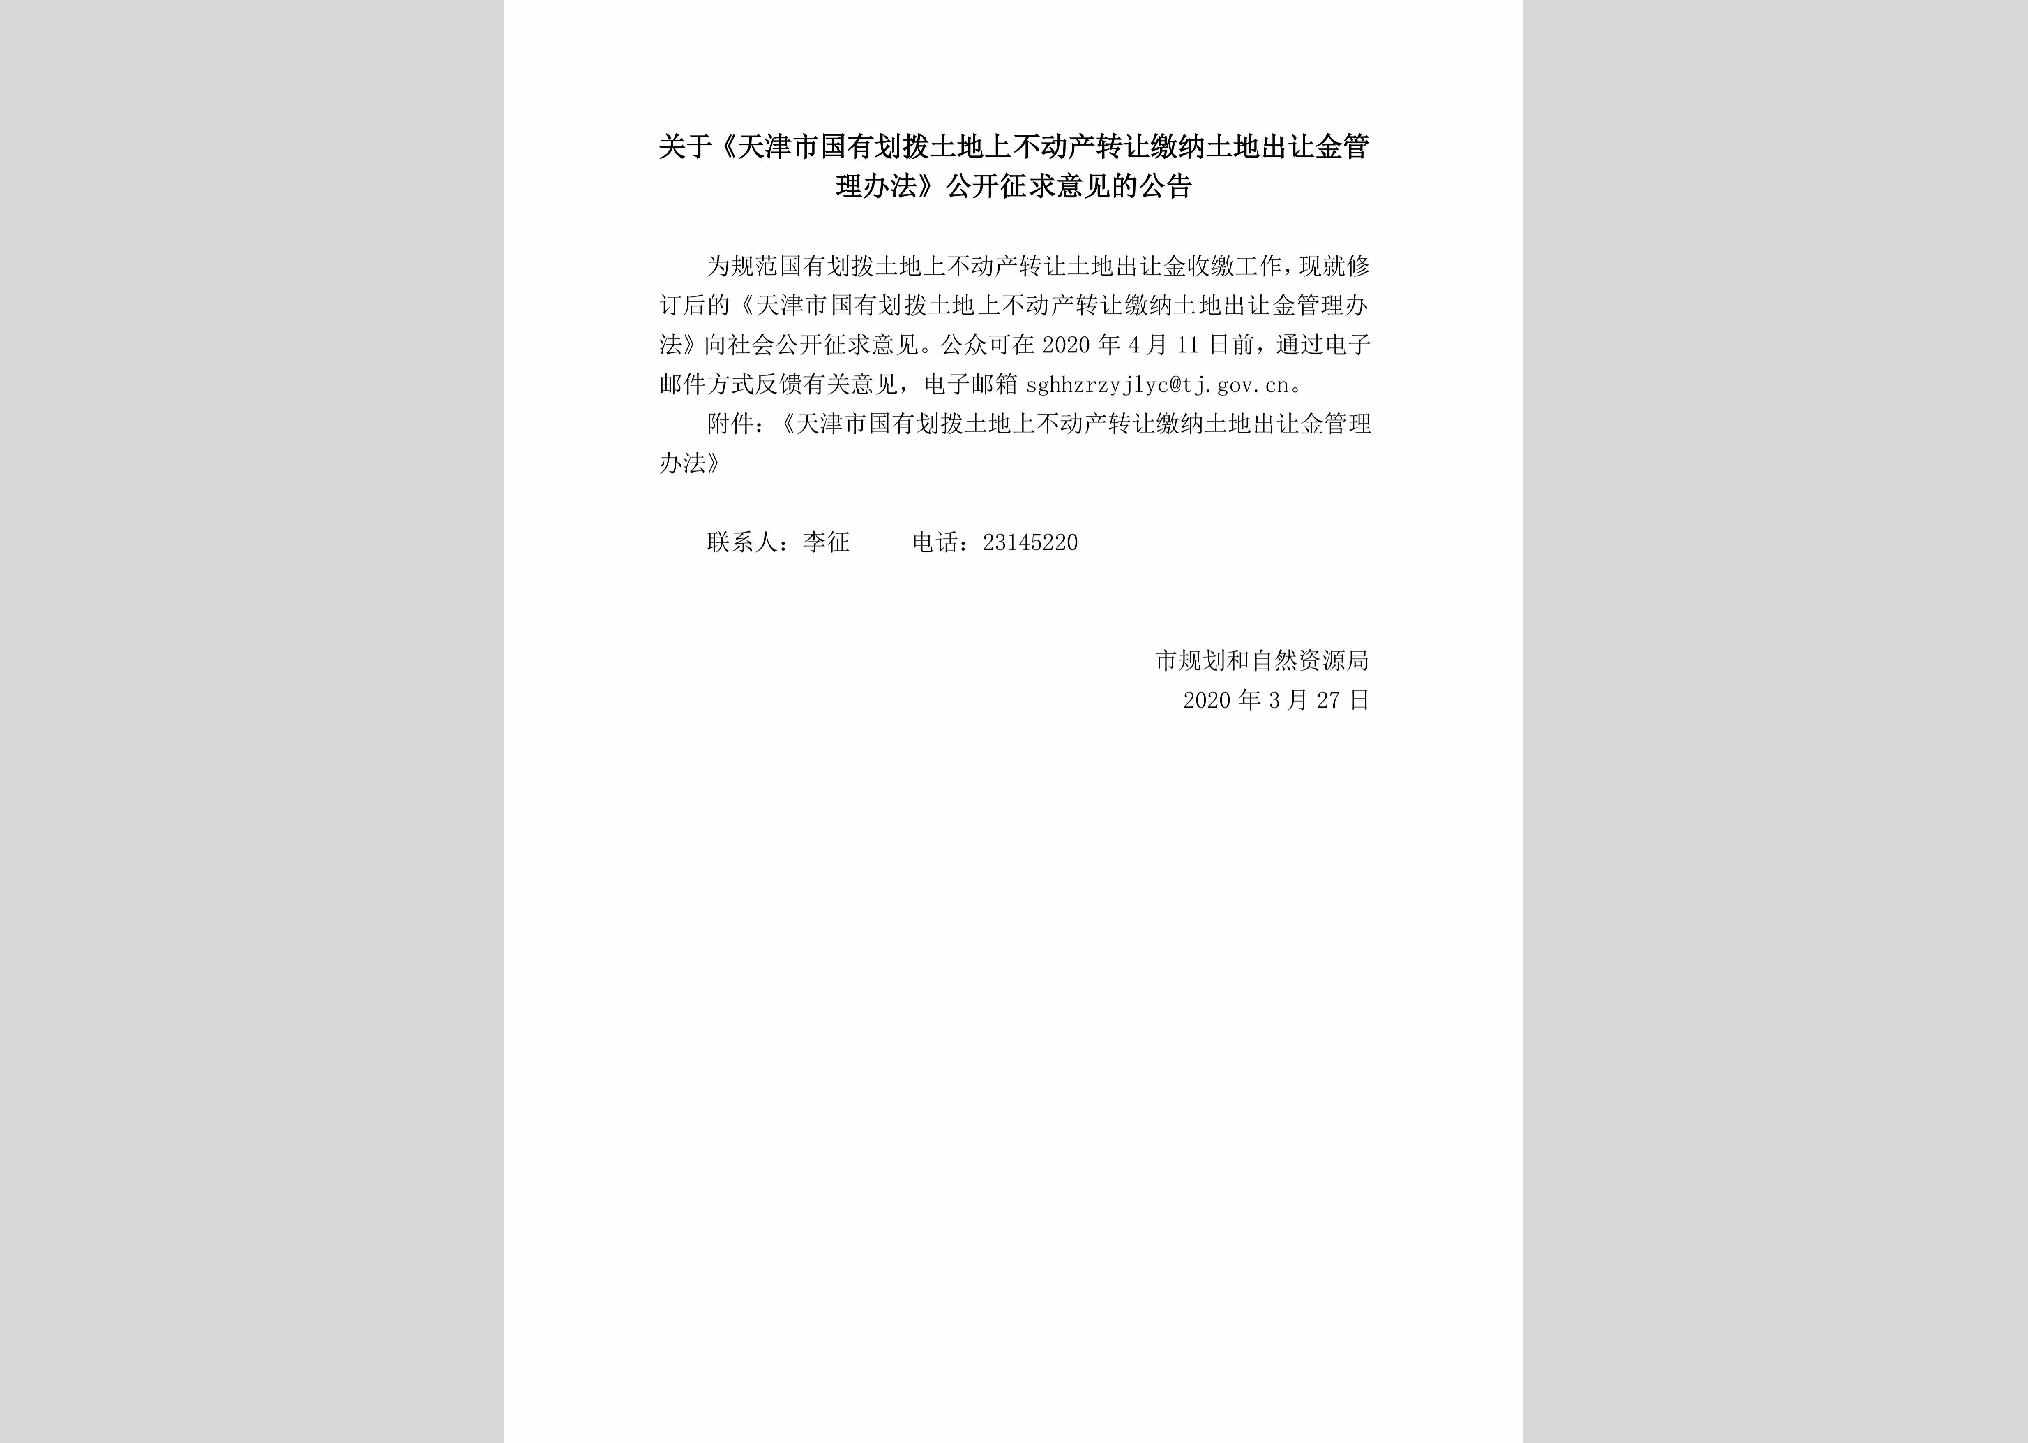 BDCZRJNT：关于《天津市国有划拨土地上不动产转让缴纳土地出让金管理办法》公开征求意见的公告